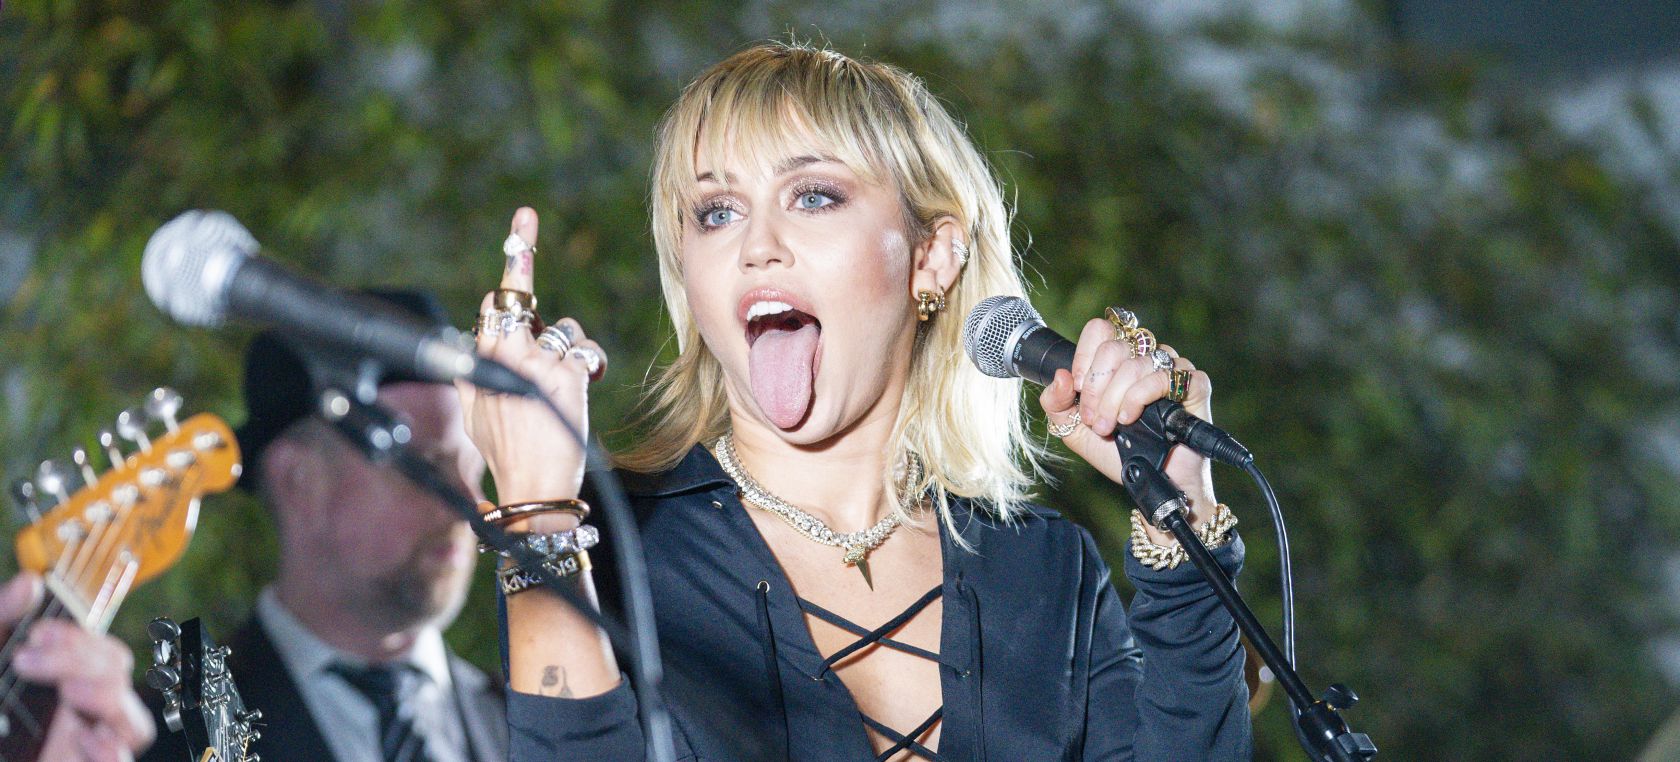 Miley Cyrus, C. Tangana, BTS, Dani Martín, Sam Smith… ¿Será alguno de ellos Nº1 este sábado?